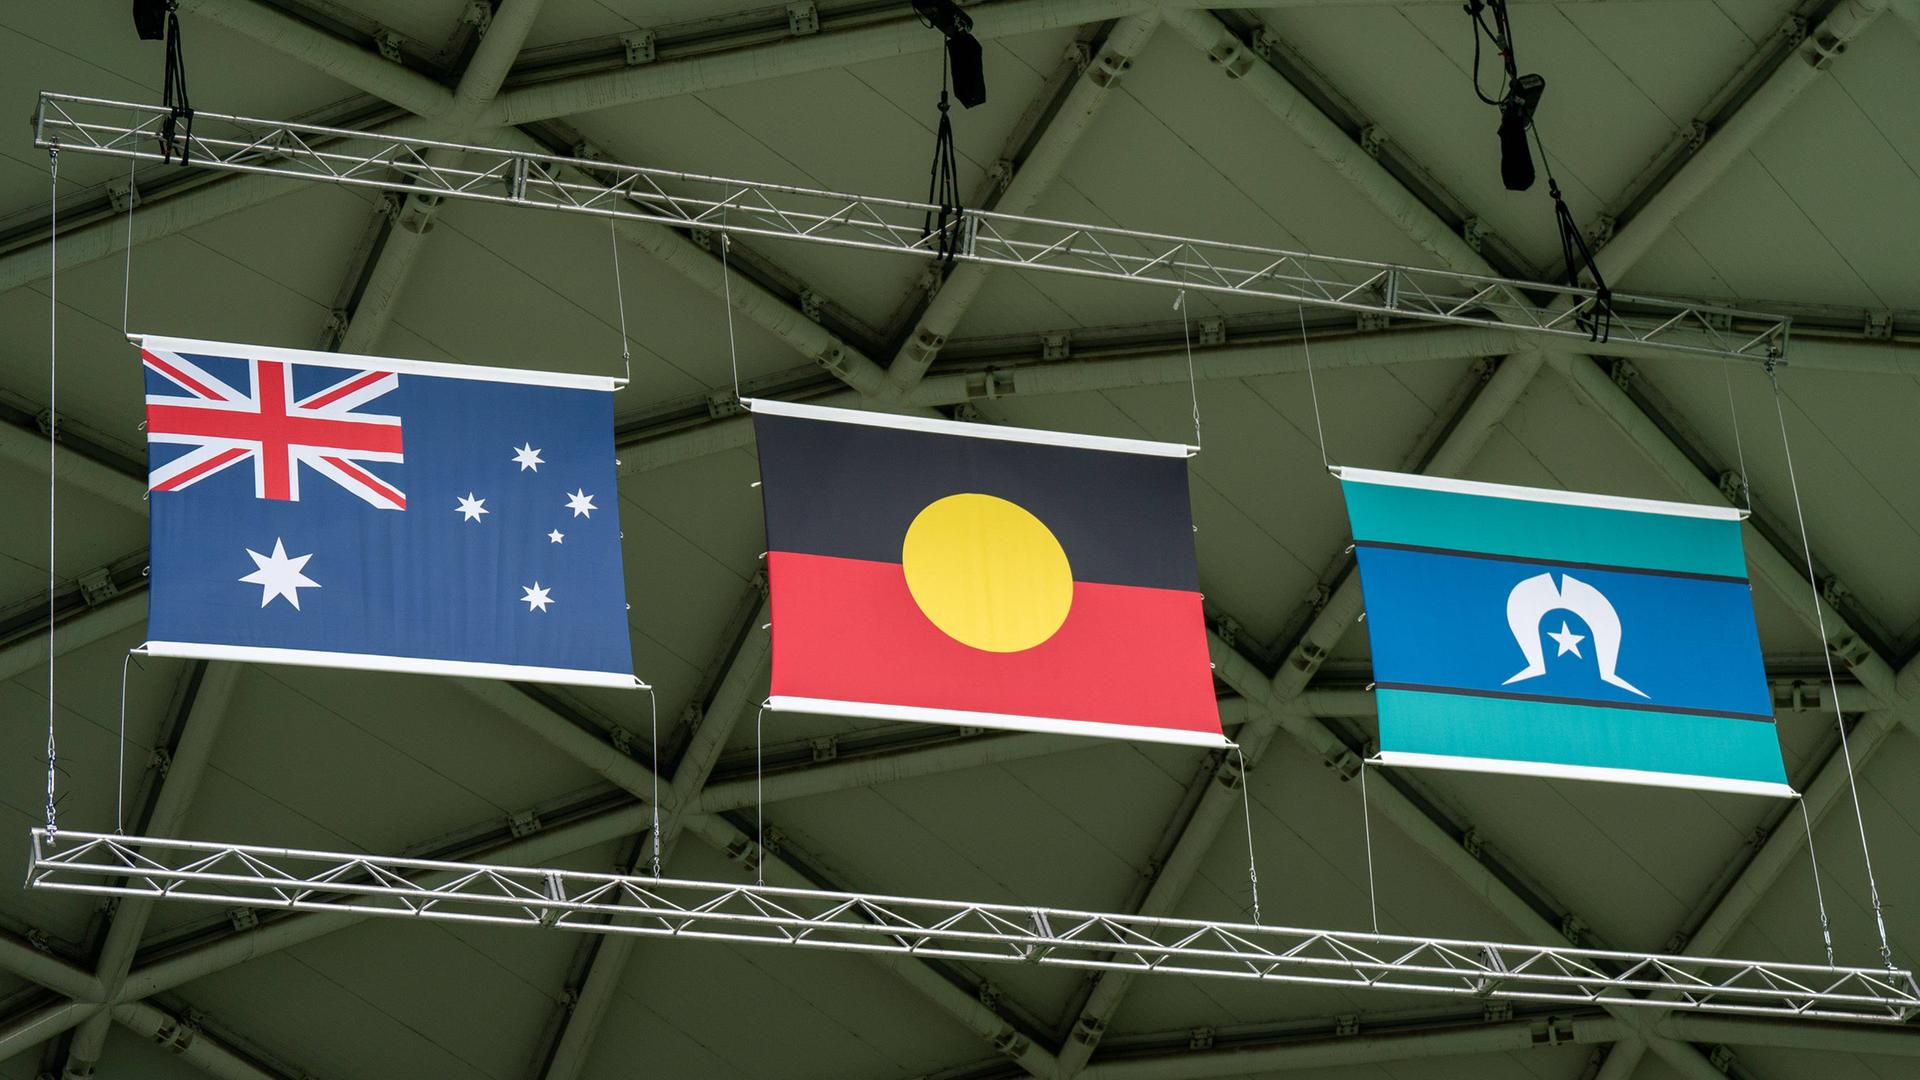 Die Nationalflagge Australiens wird bei der Eröffnungsfeier der FIFA-Frauen-Weltmeisterschaft an der Seite der Fahnen der Aborigines und Torres-Strait-Insulaner gezeigt.